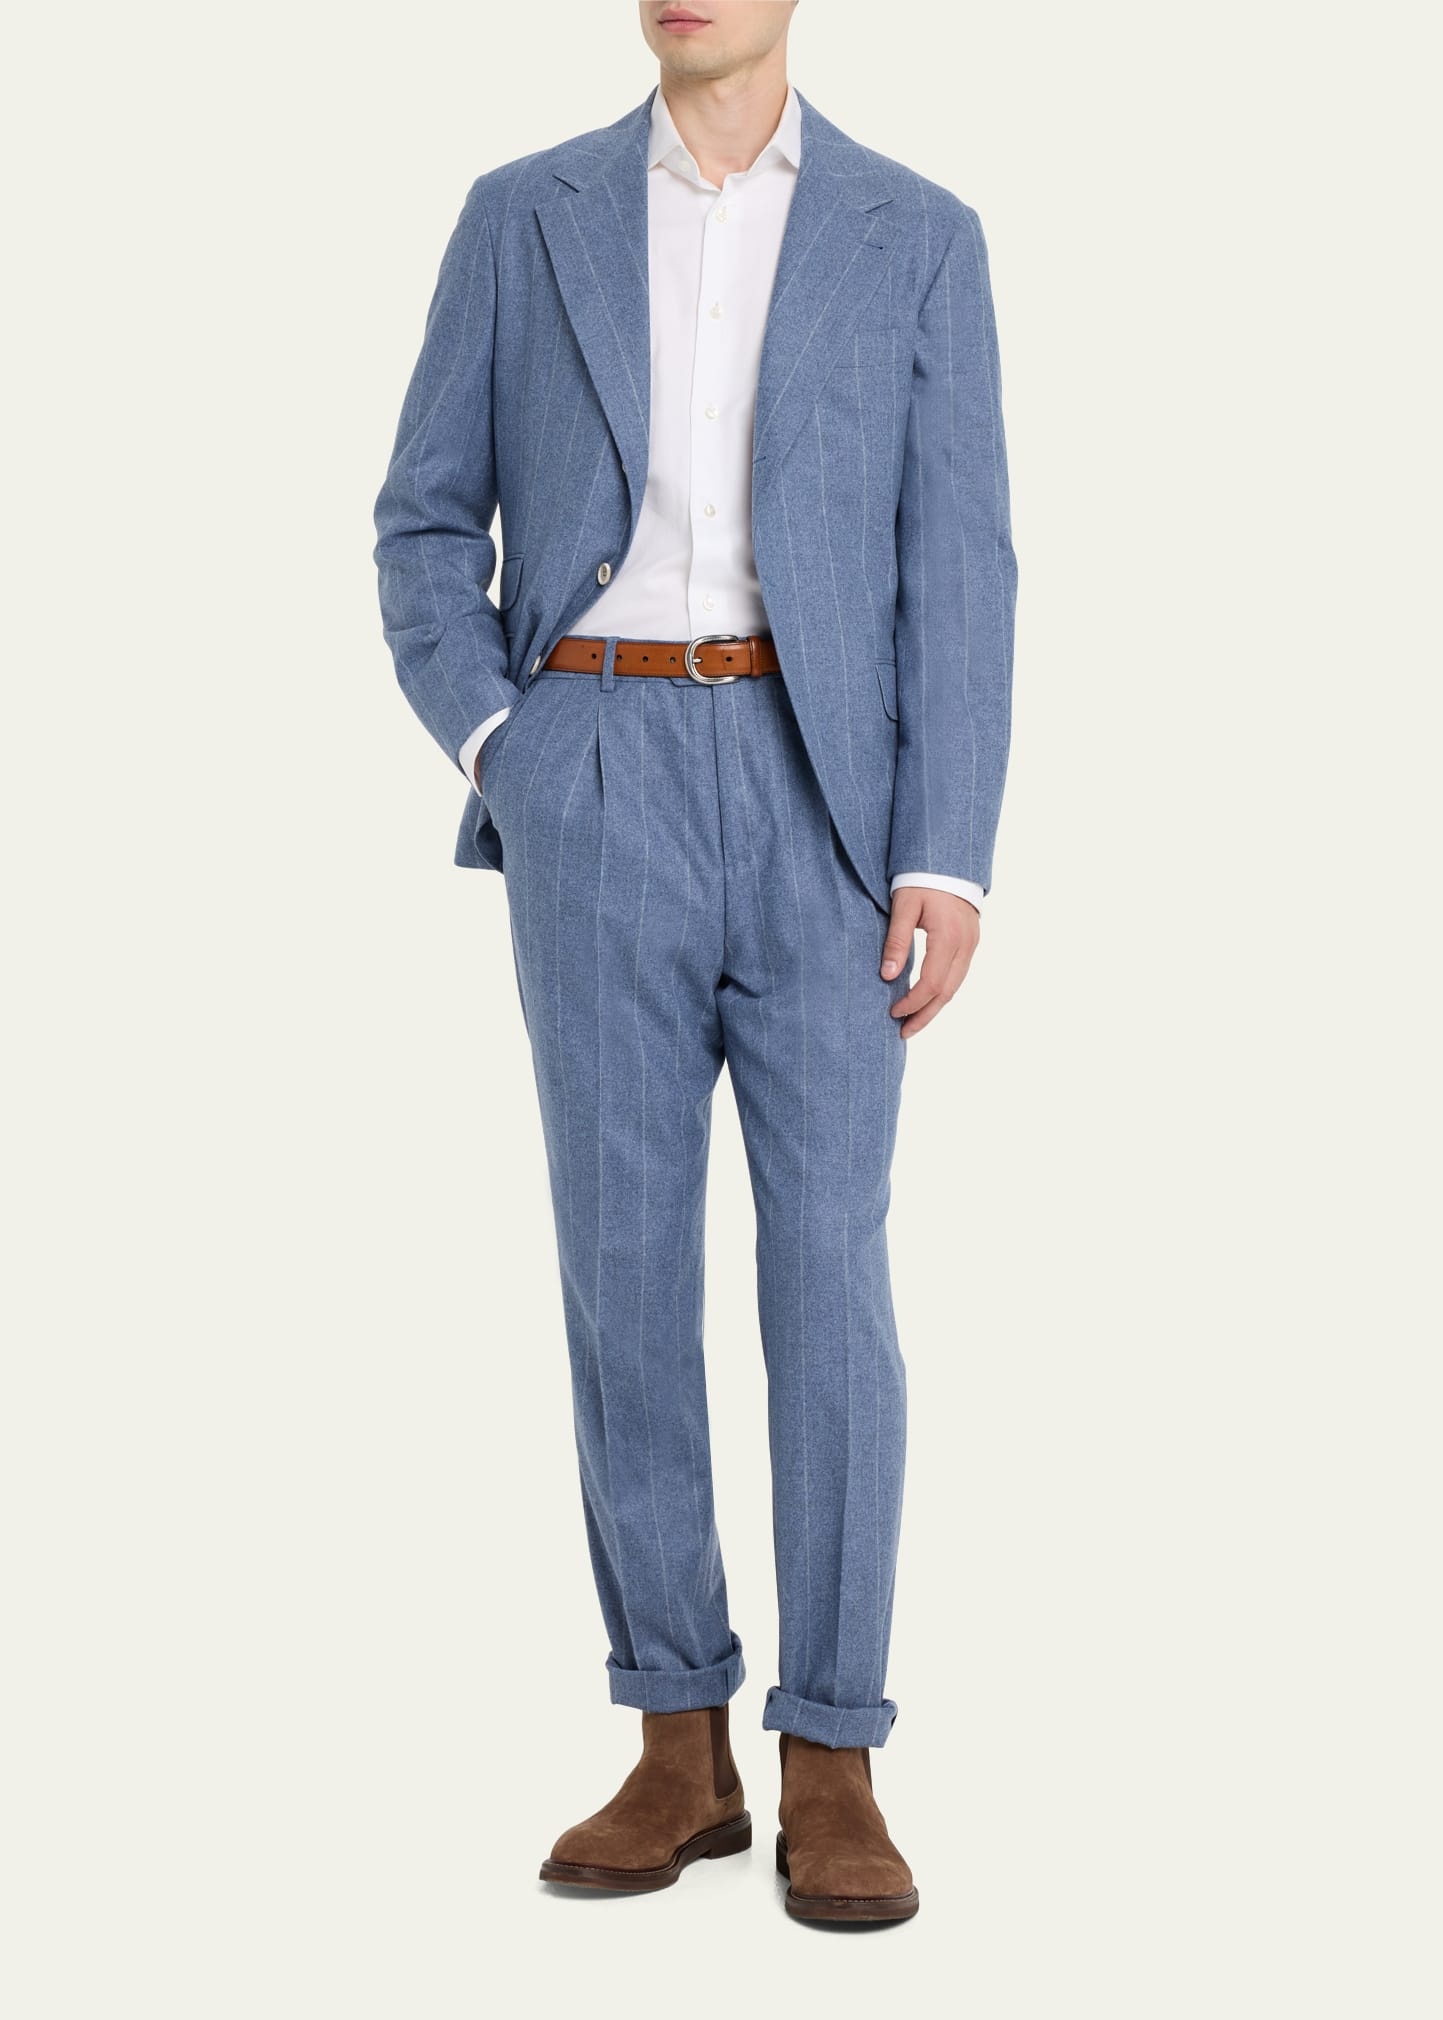 Men's Striped Light Flannel Suit - 2